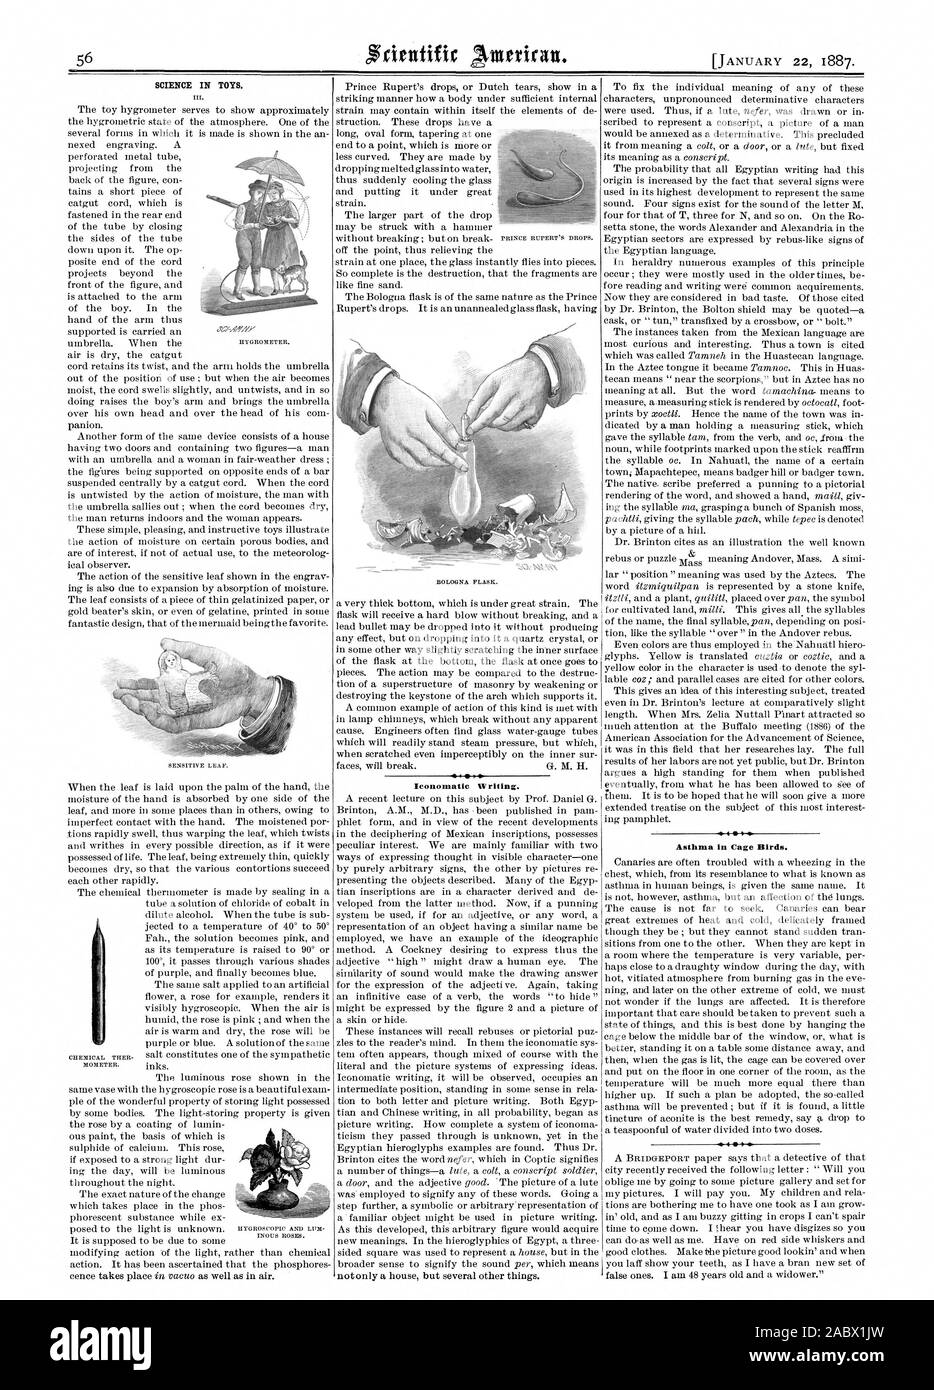 Wissenschaft in Spielzeug. Iconomatie Schreiben. Asthma in den Käfig Vögel., Scientific American, 1887-01-22 Stockfoto